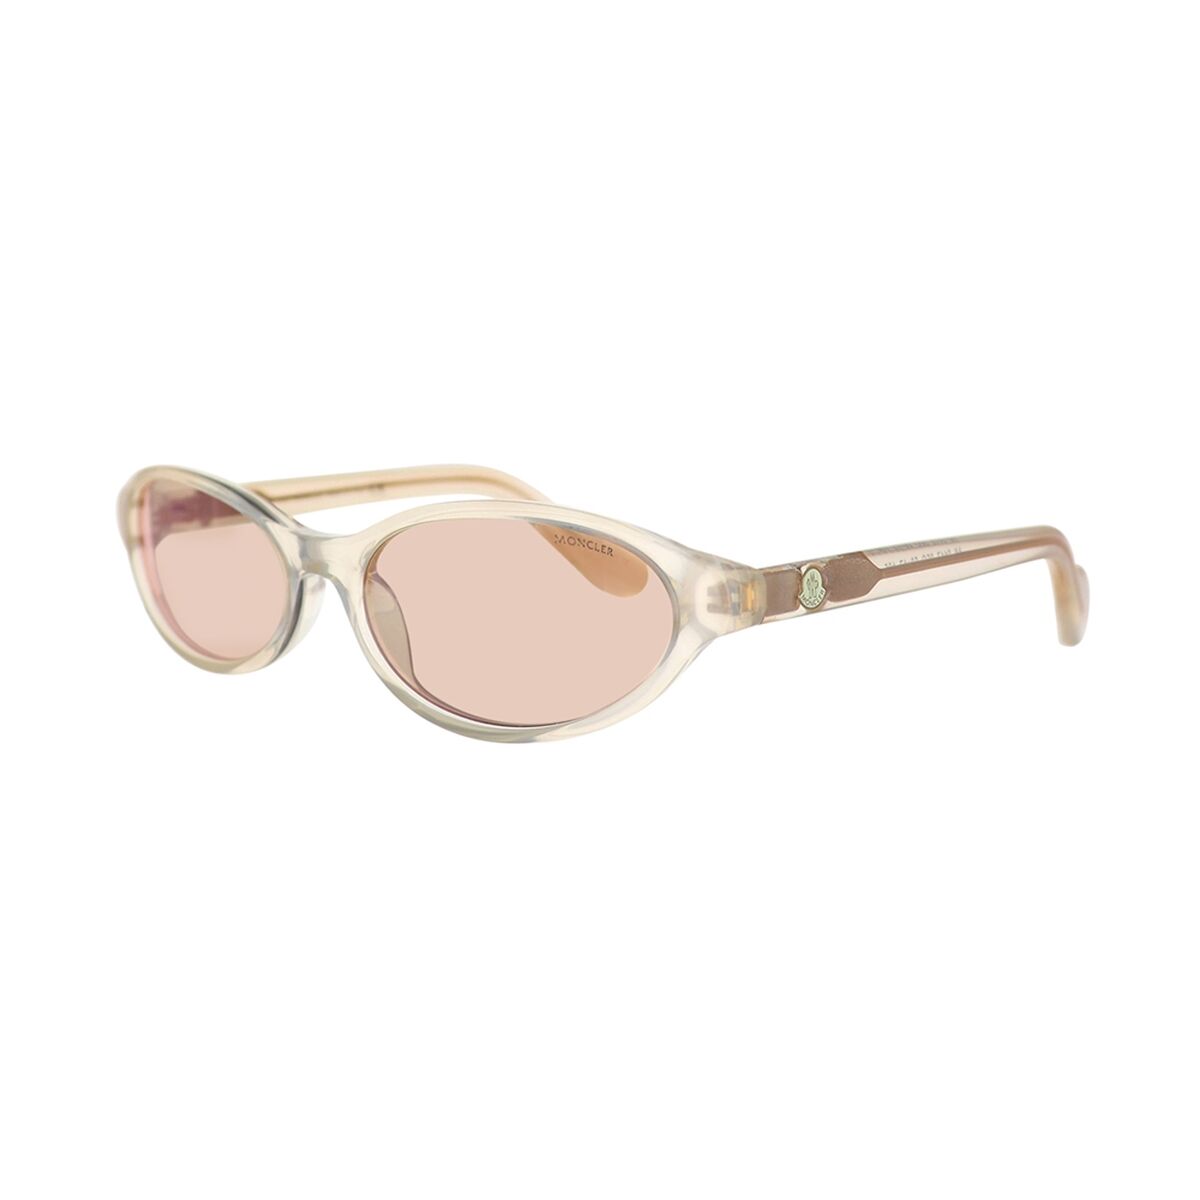 Kaufe Damensonnenbrille Moncler ML0117-25G-58 bei AWK Flagship um € 126.00